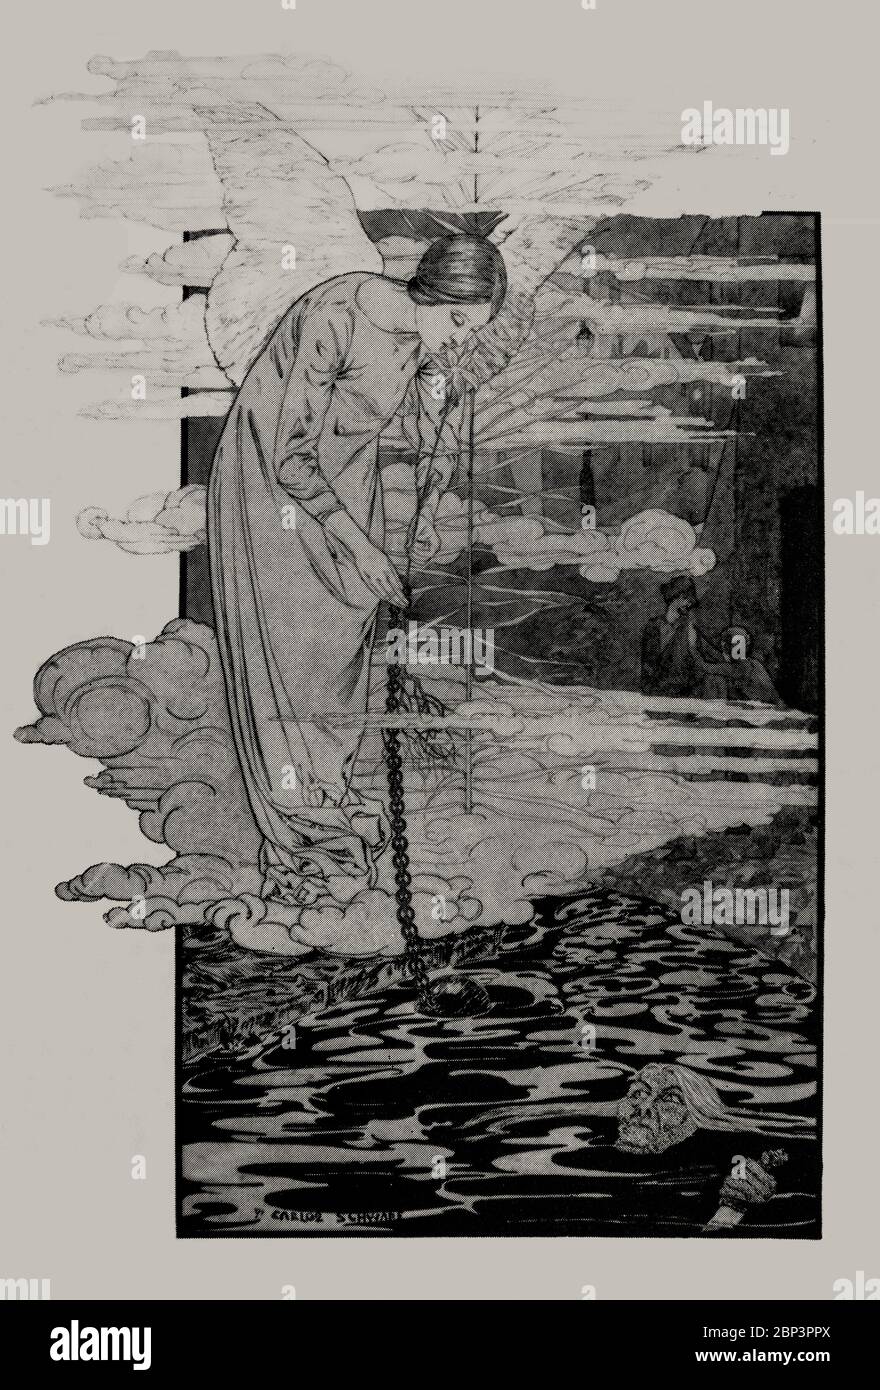 Illustration de la Reve d'Emile Zola par Carlos Schwabe (1866-1926), un peintre symboliste suisse est une œuvre symbolique importante du nouvel art idéaliste après avoir étudié l'art à Genève, Schwabe s'est déplacé à Paris pour devenir l'un des plus importants illustrateurs de livres symbolistes. Banque D'Images